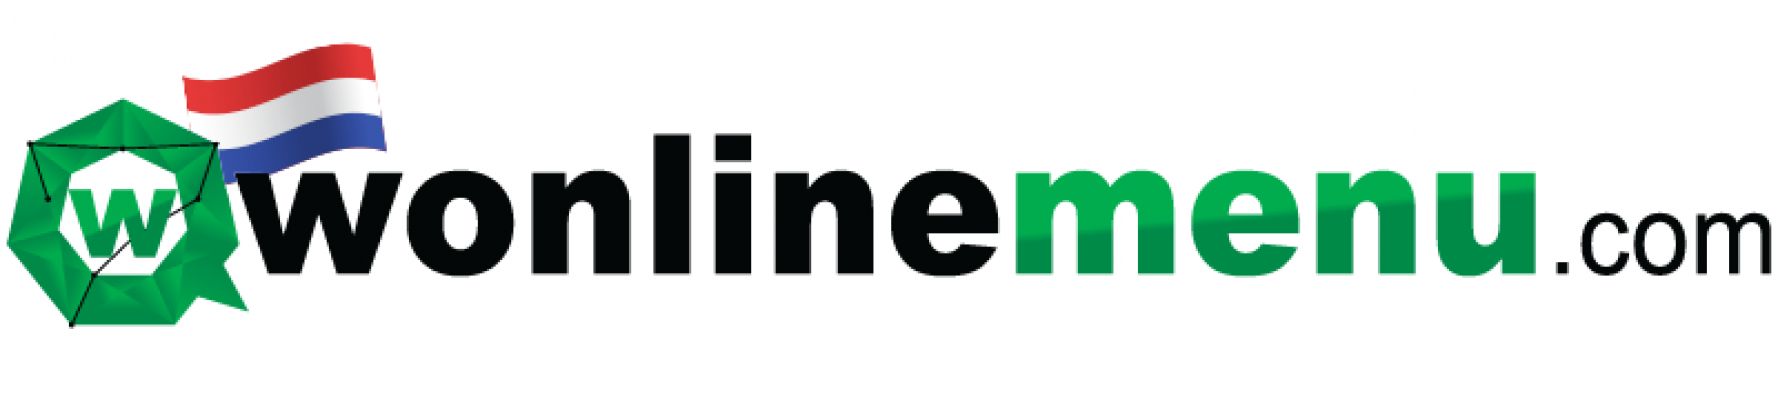 wonlinemenu.com | Nederlands